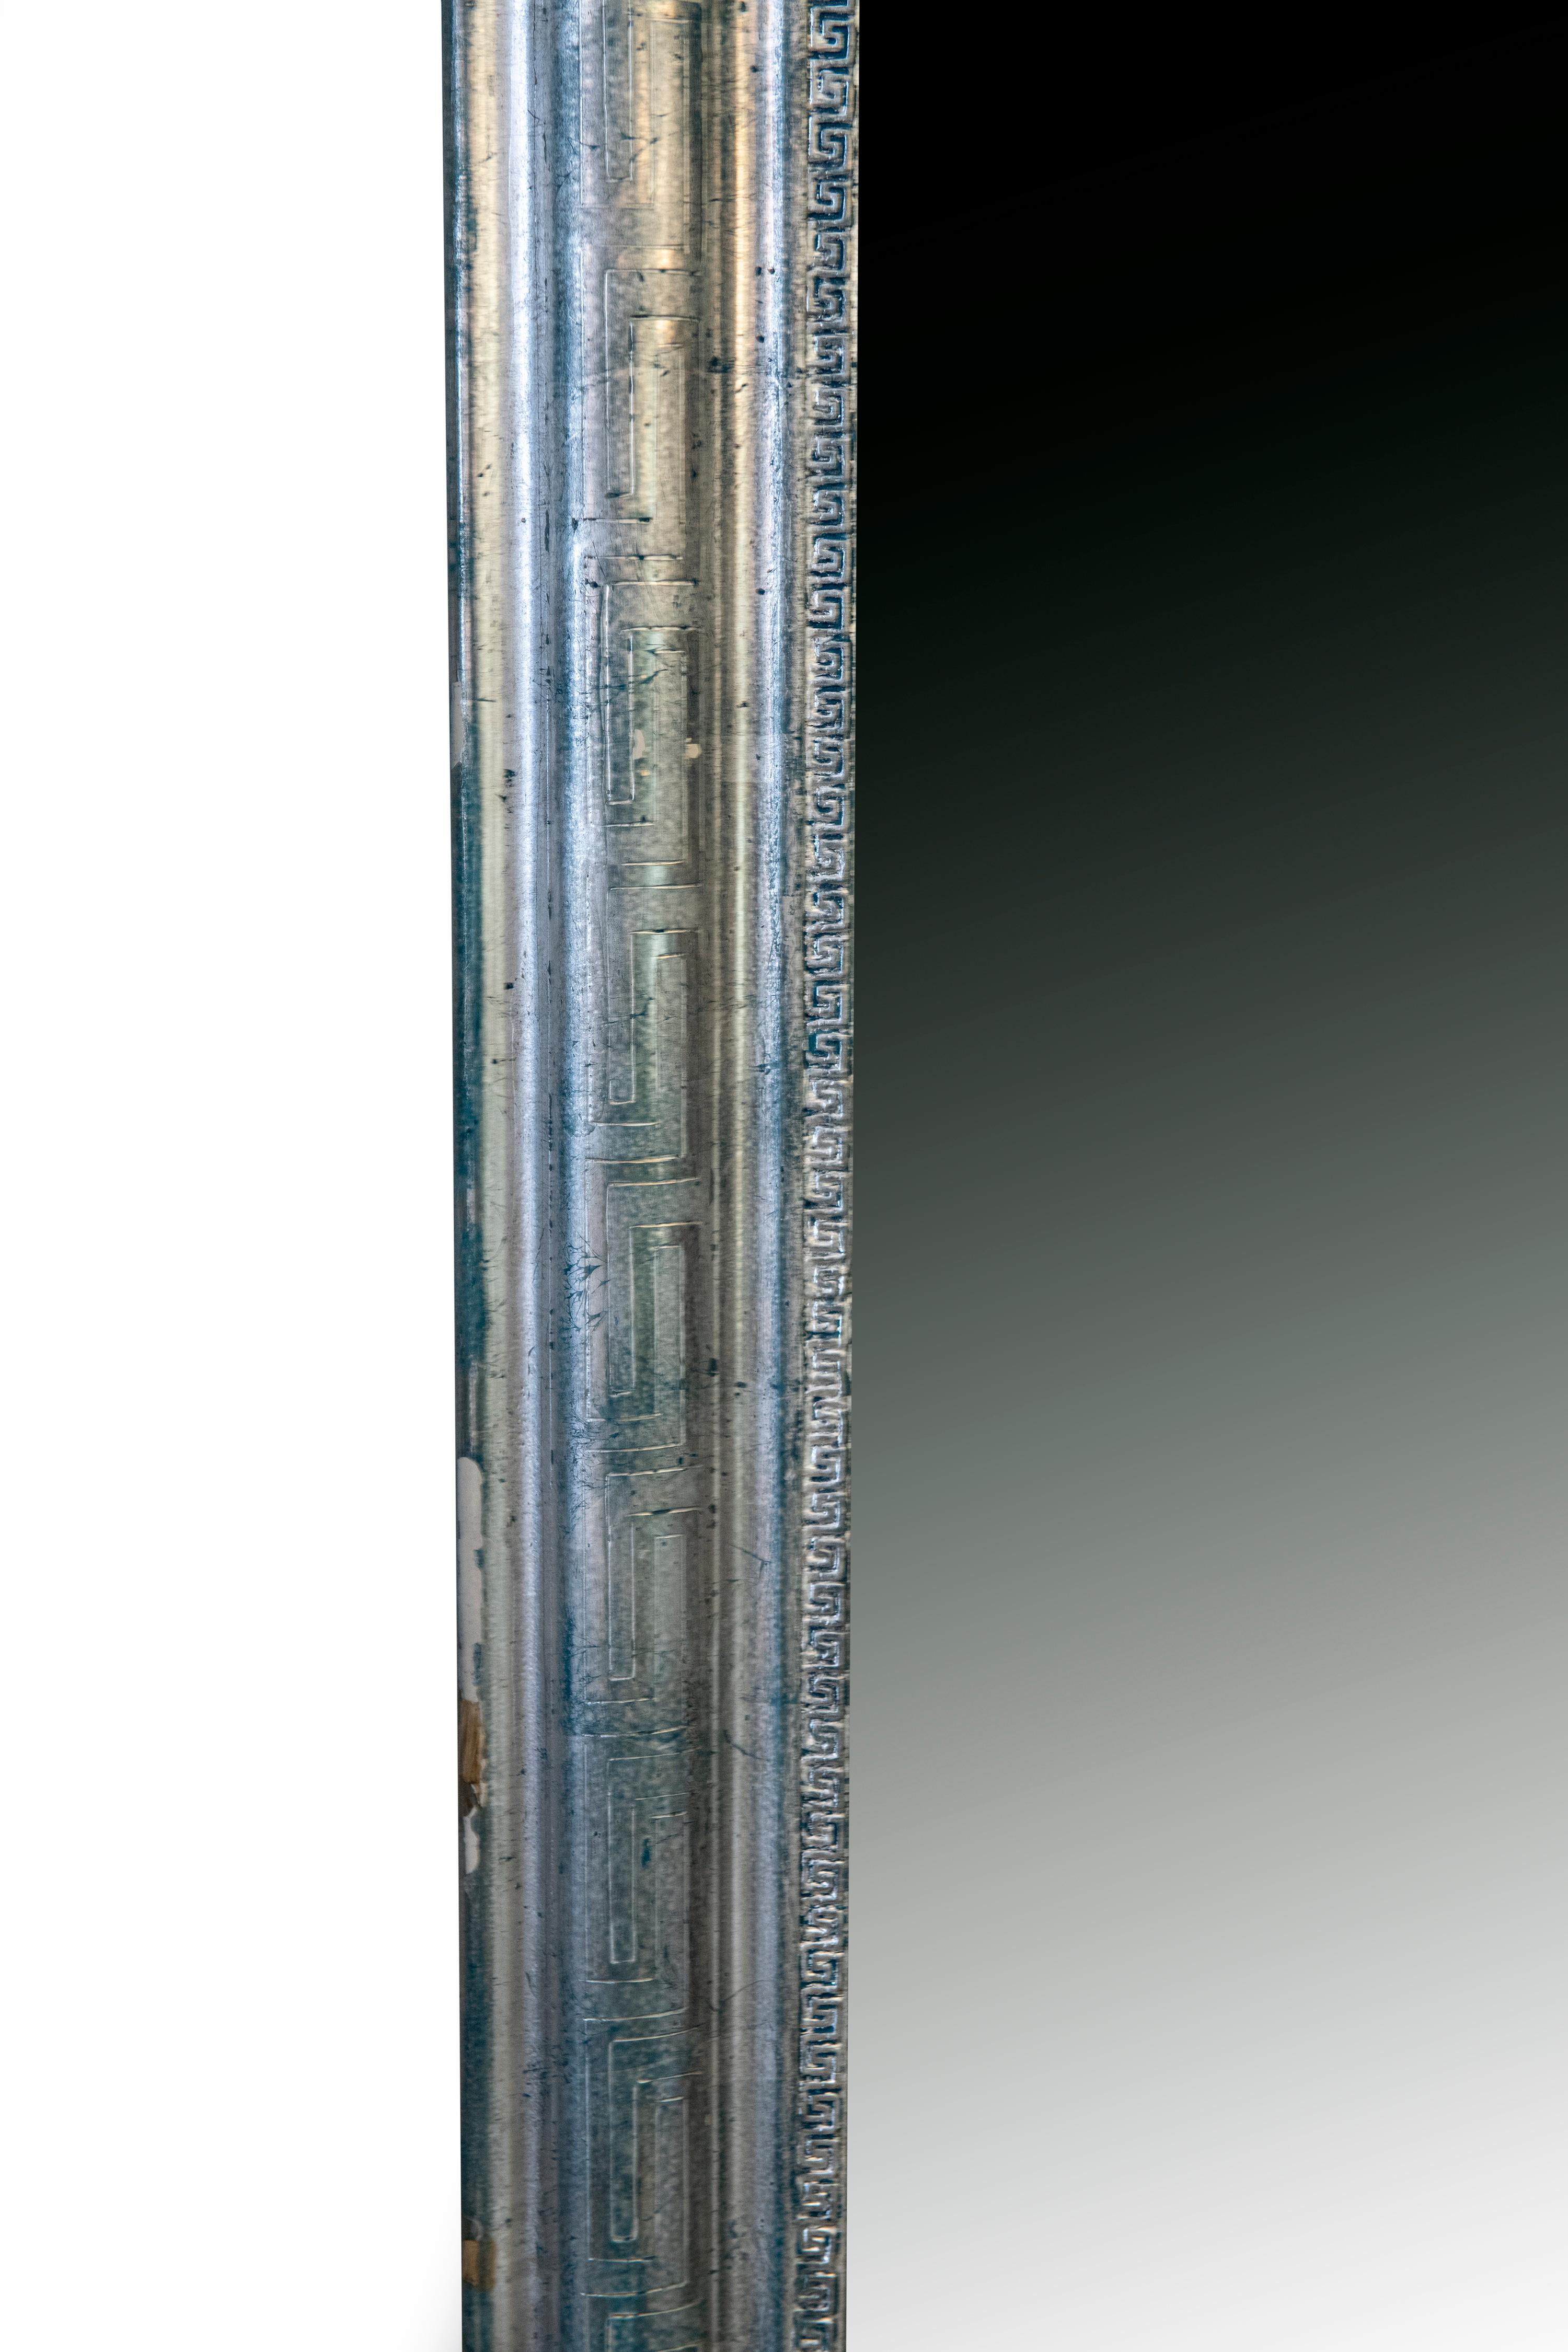 Silber auf Blau Louis Philippe Periode antiken Spiegel mit geschnitzten griechischen Schlüssel und griechischen Schlüssel Ätzen, um den Rahmen.